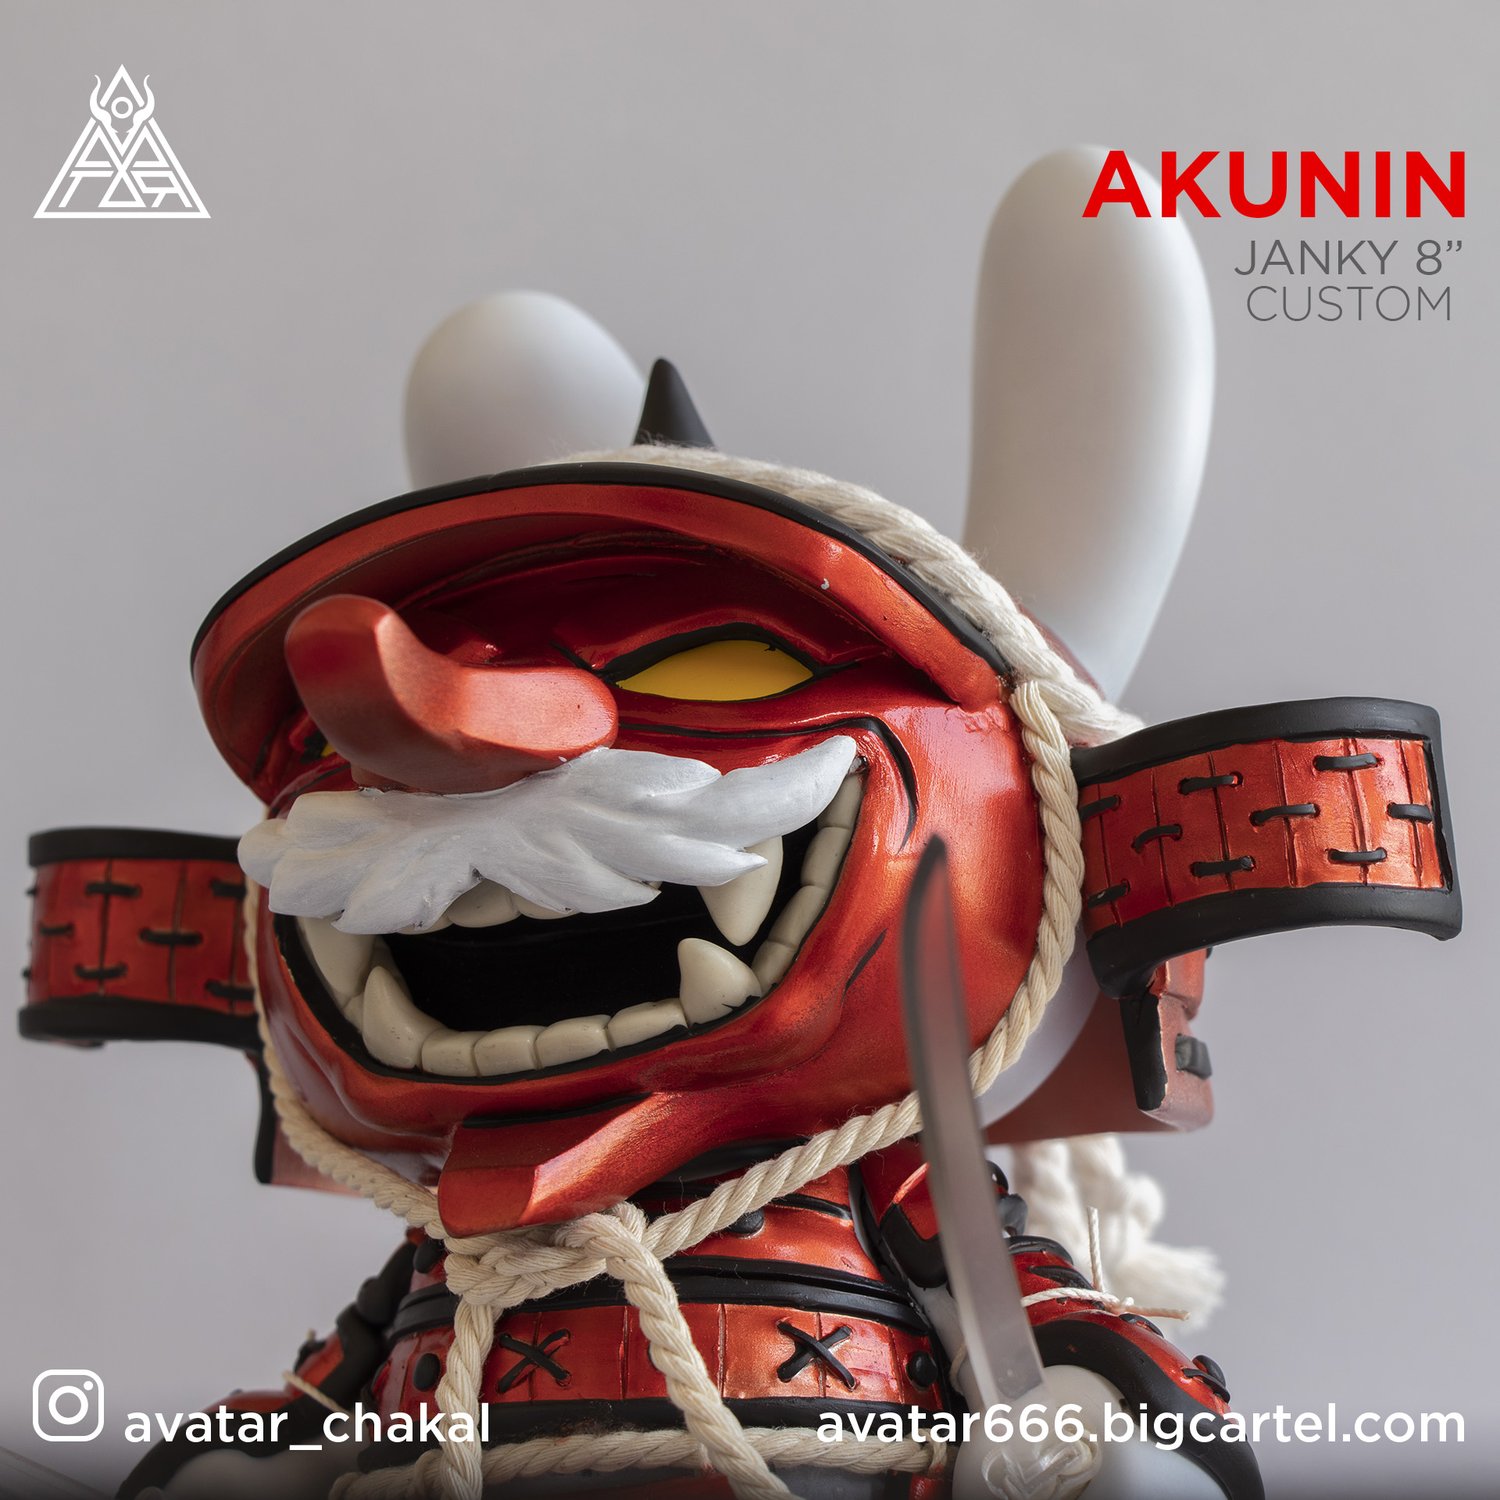 Image of Akunin Janky custom 8"